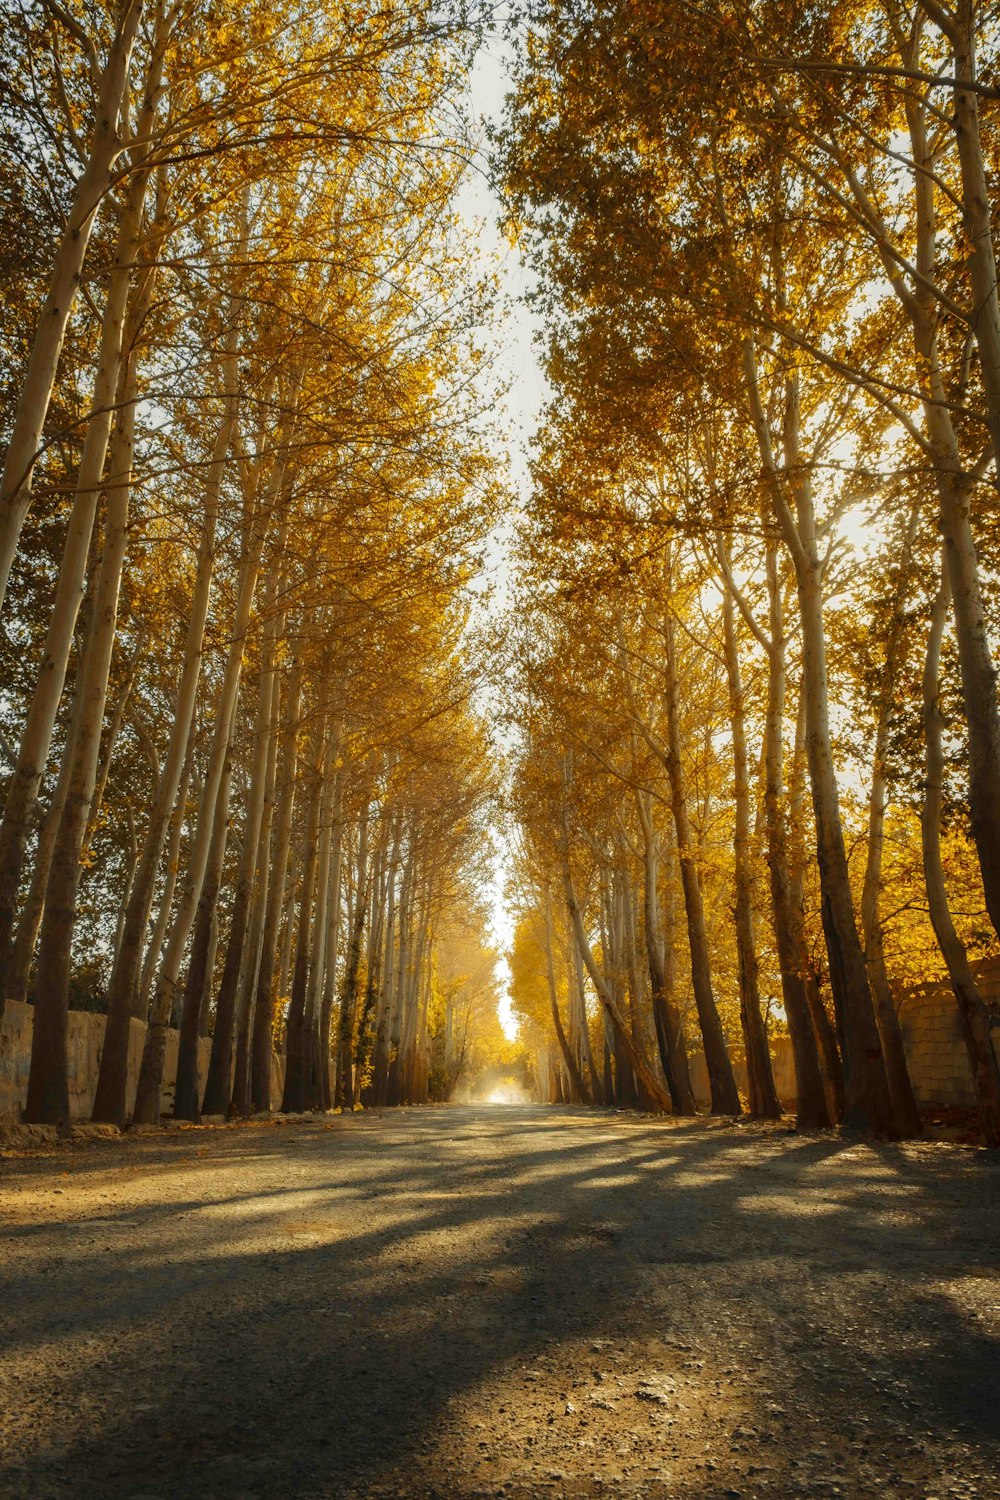 黄色い葉のある木々に囲まれた未舗装の道路